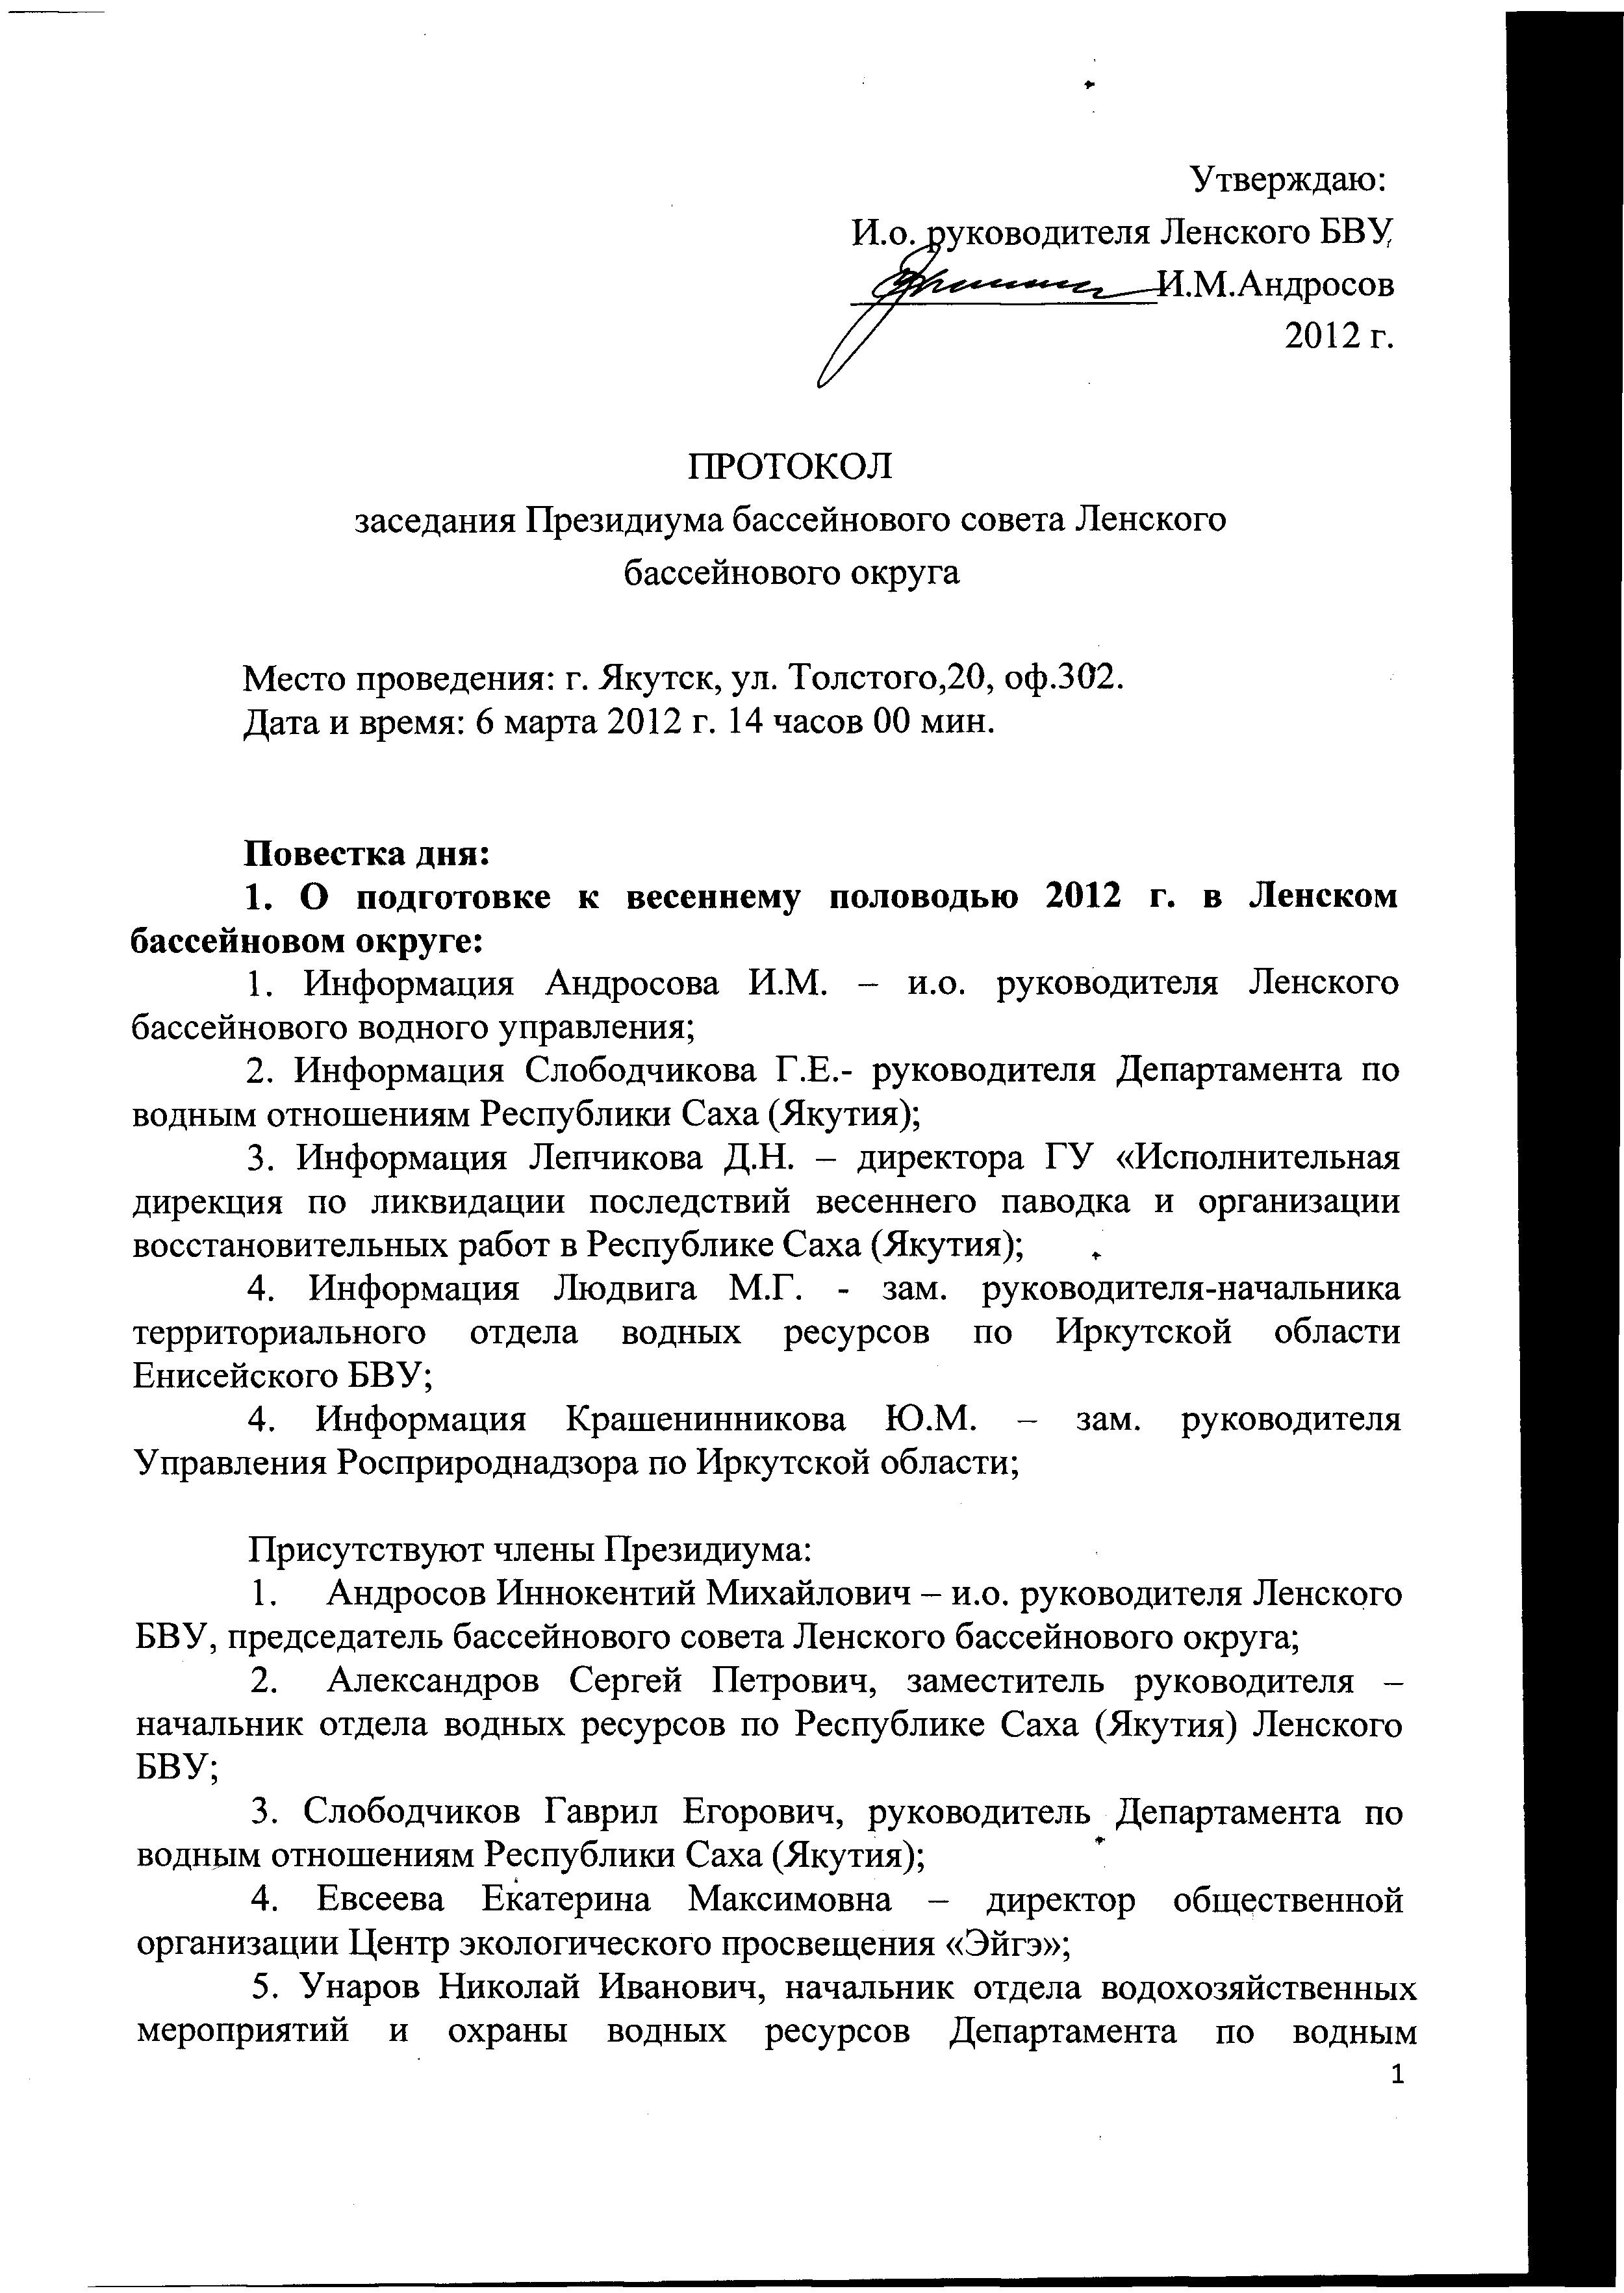 Протокол от 06.03.2012 г. Президиума Бассейнового совета